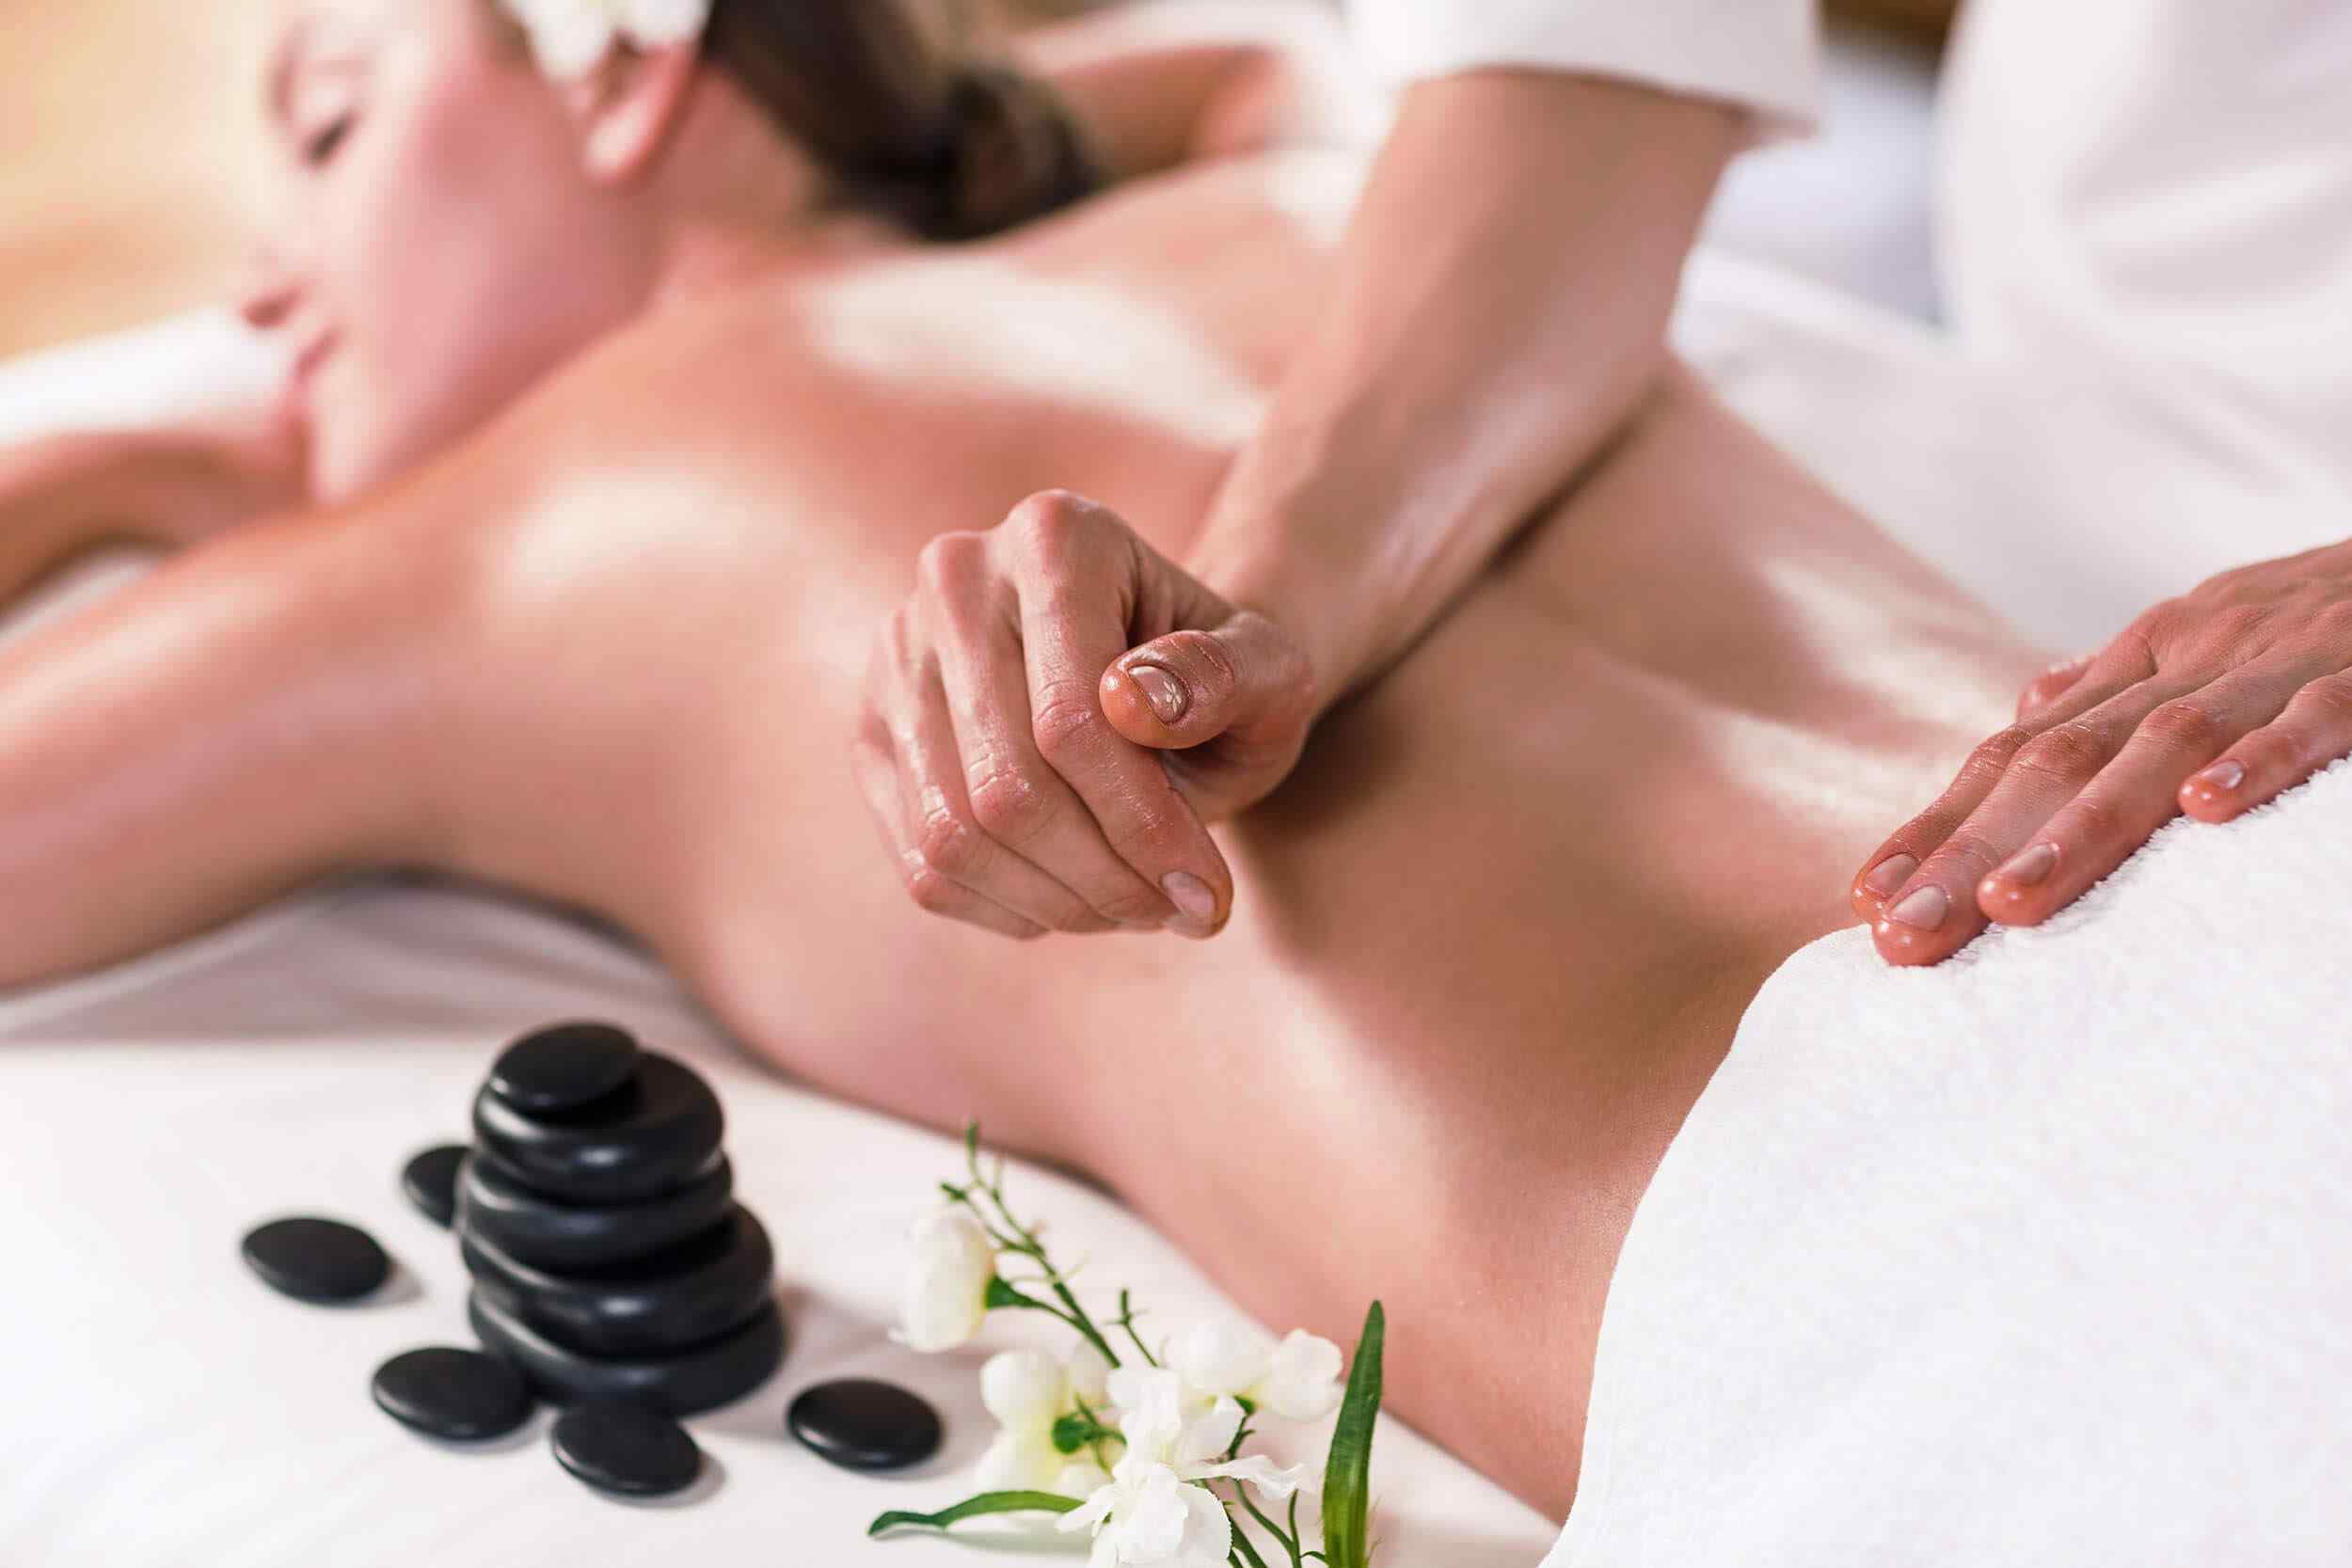 https://dunyawomen.nl/wp-content/uploads/2018/10/spa-massage-16.jpg